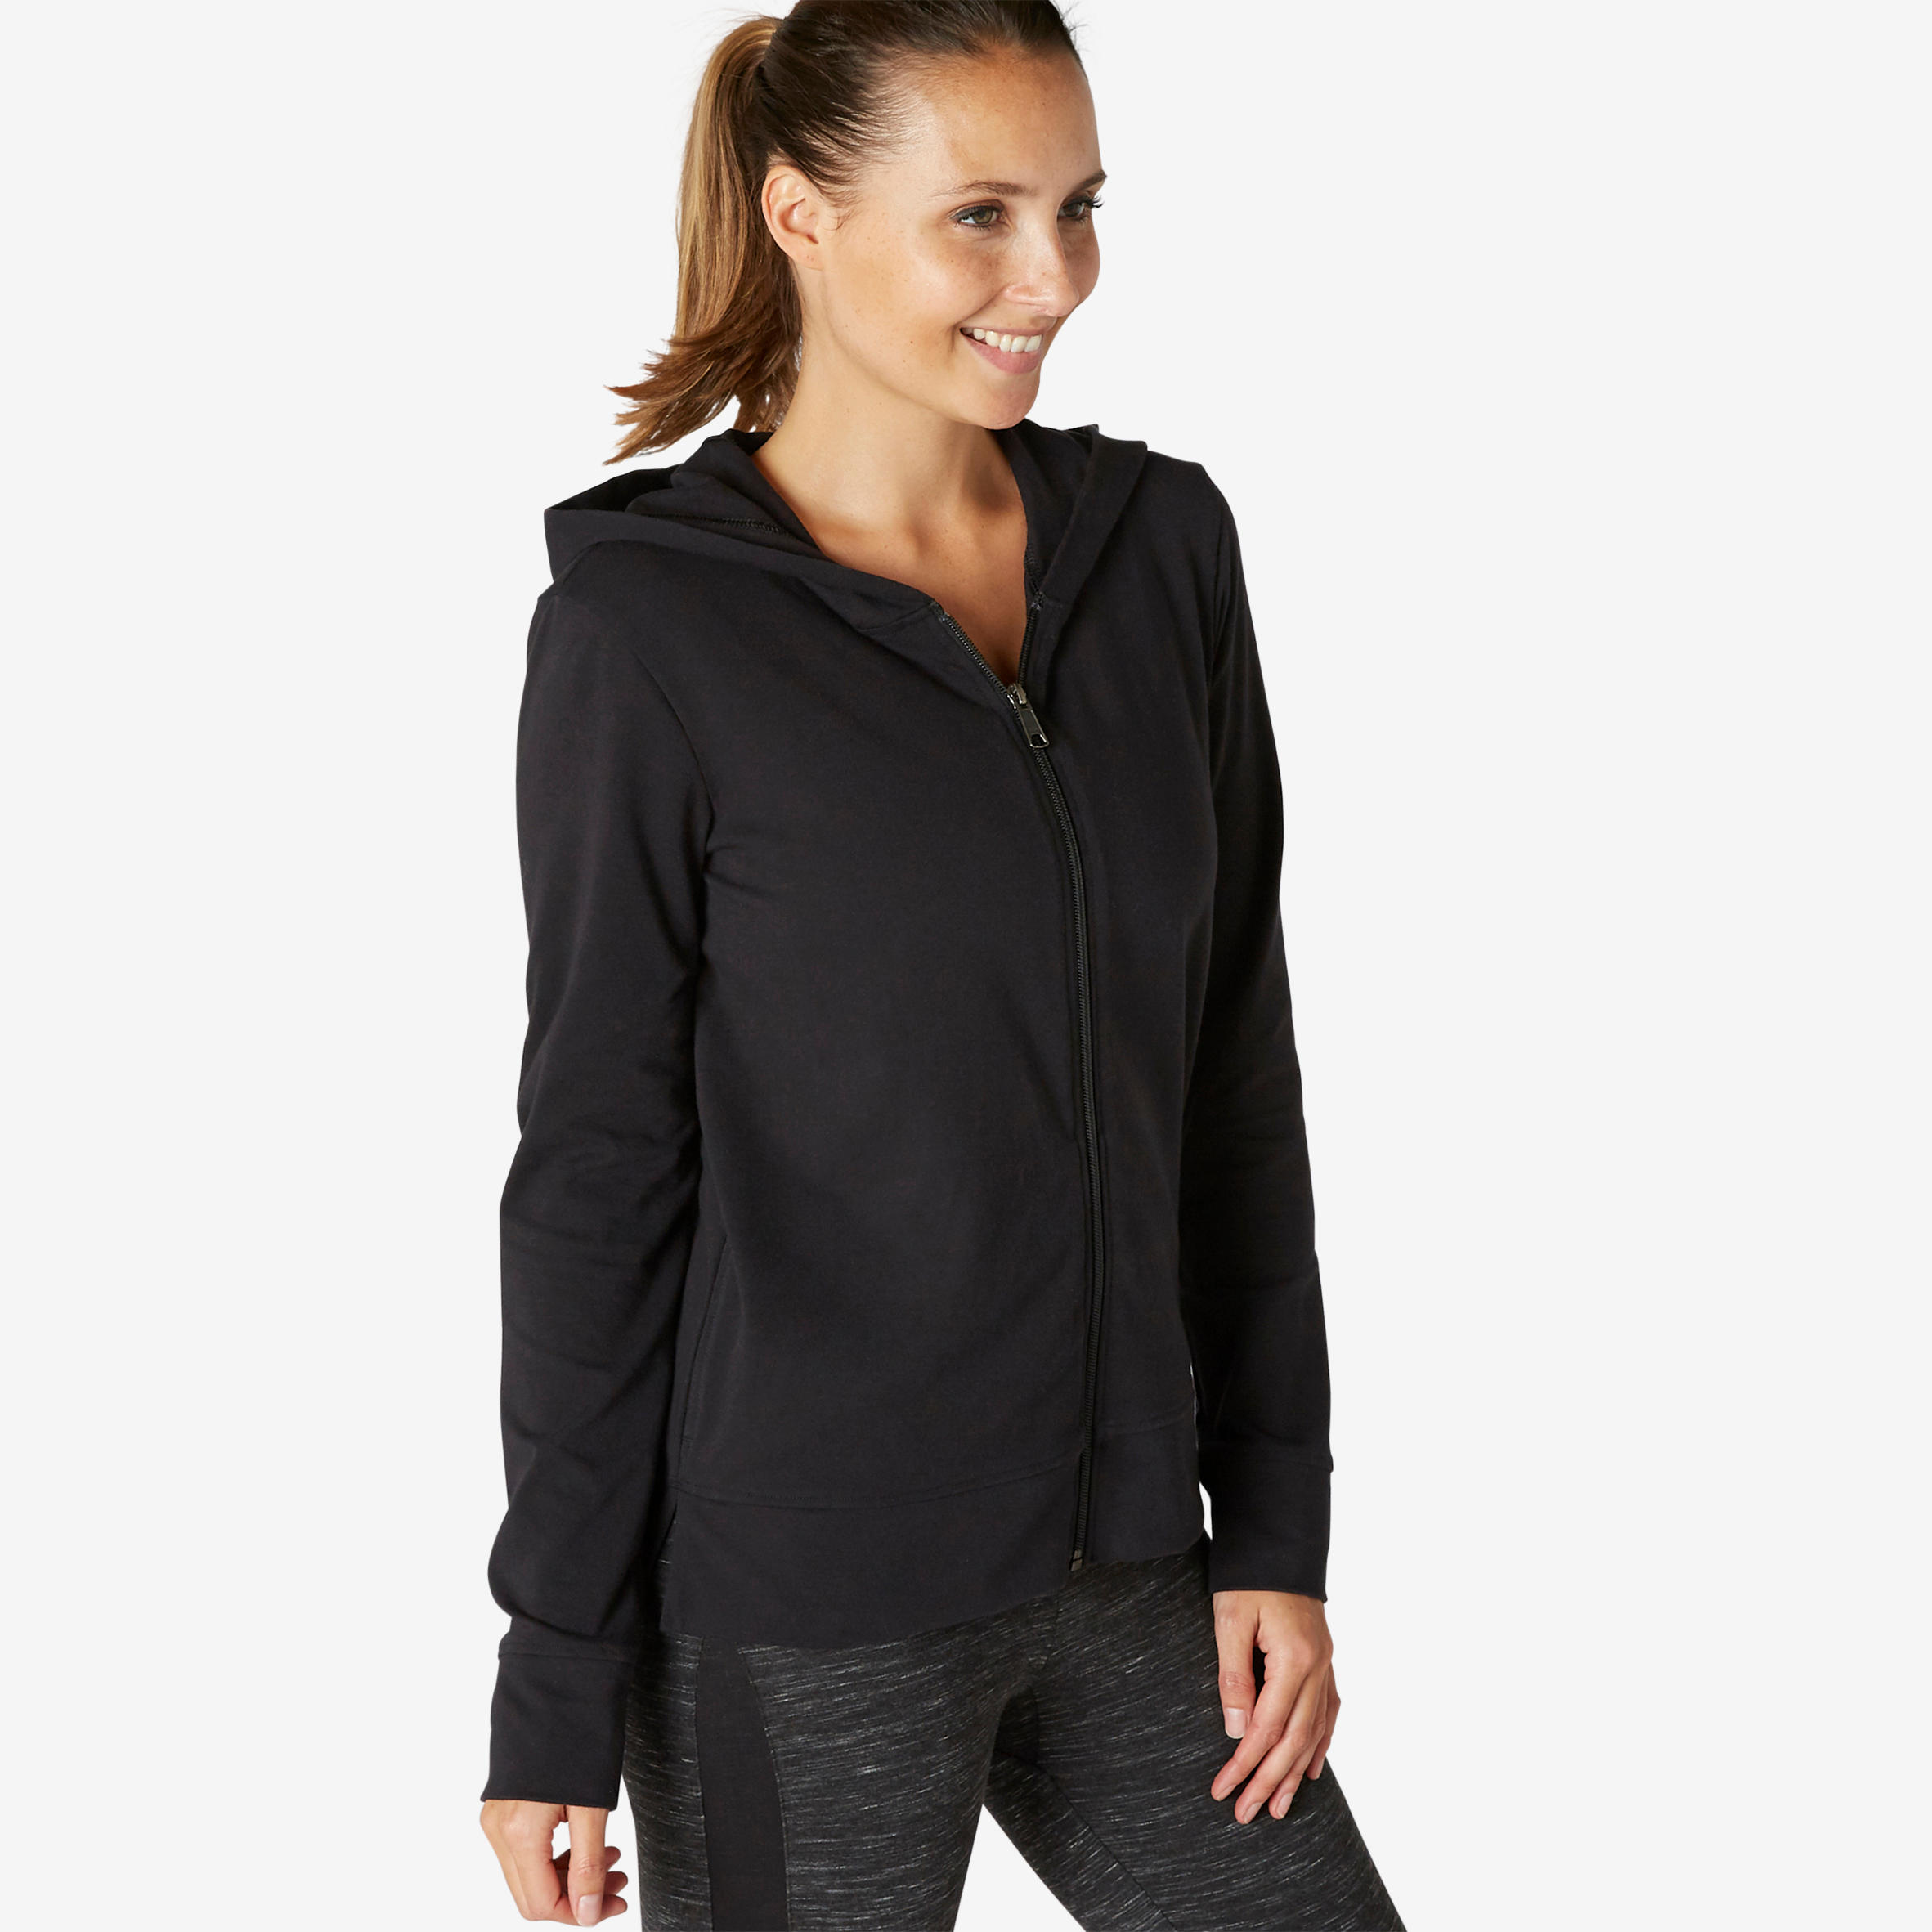 Women's Sweatshirt Hoodie Jacket For Gym 100- Black